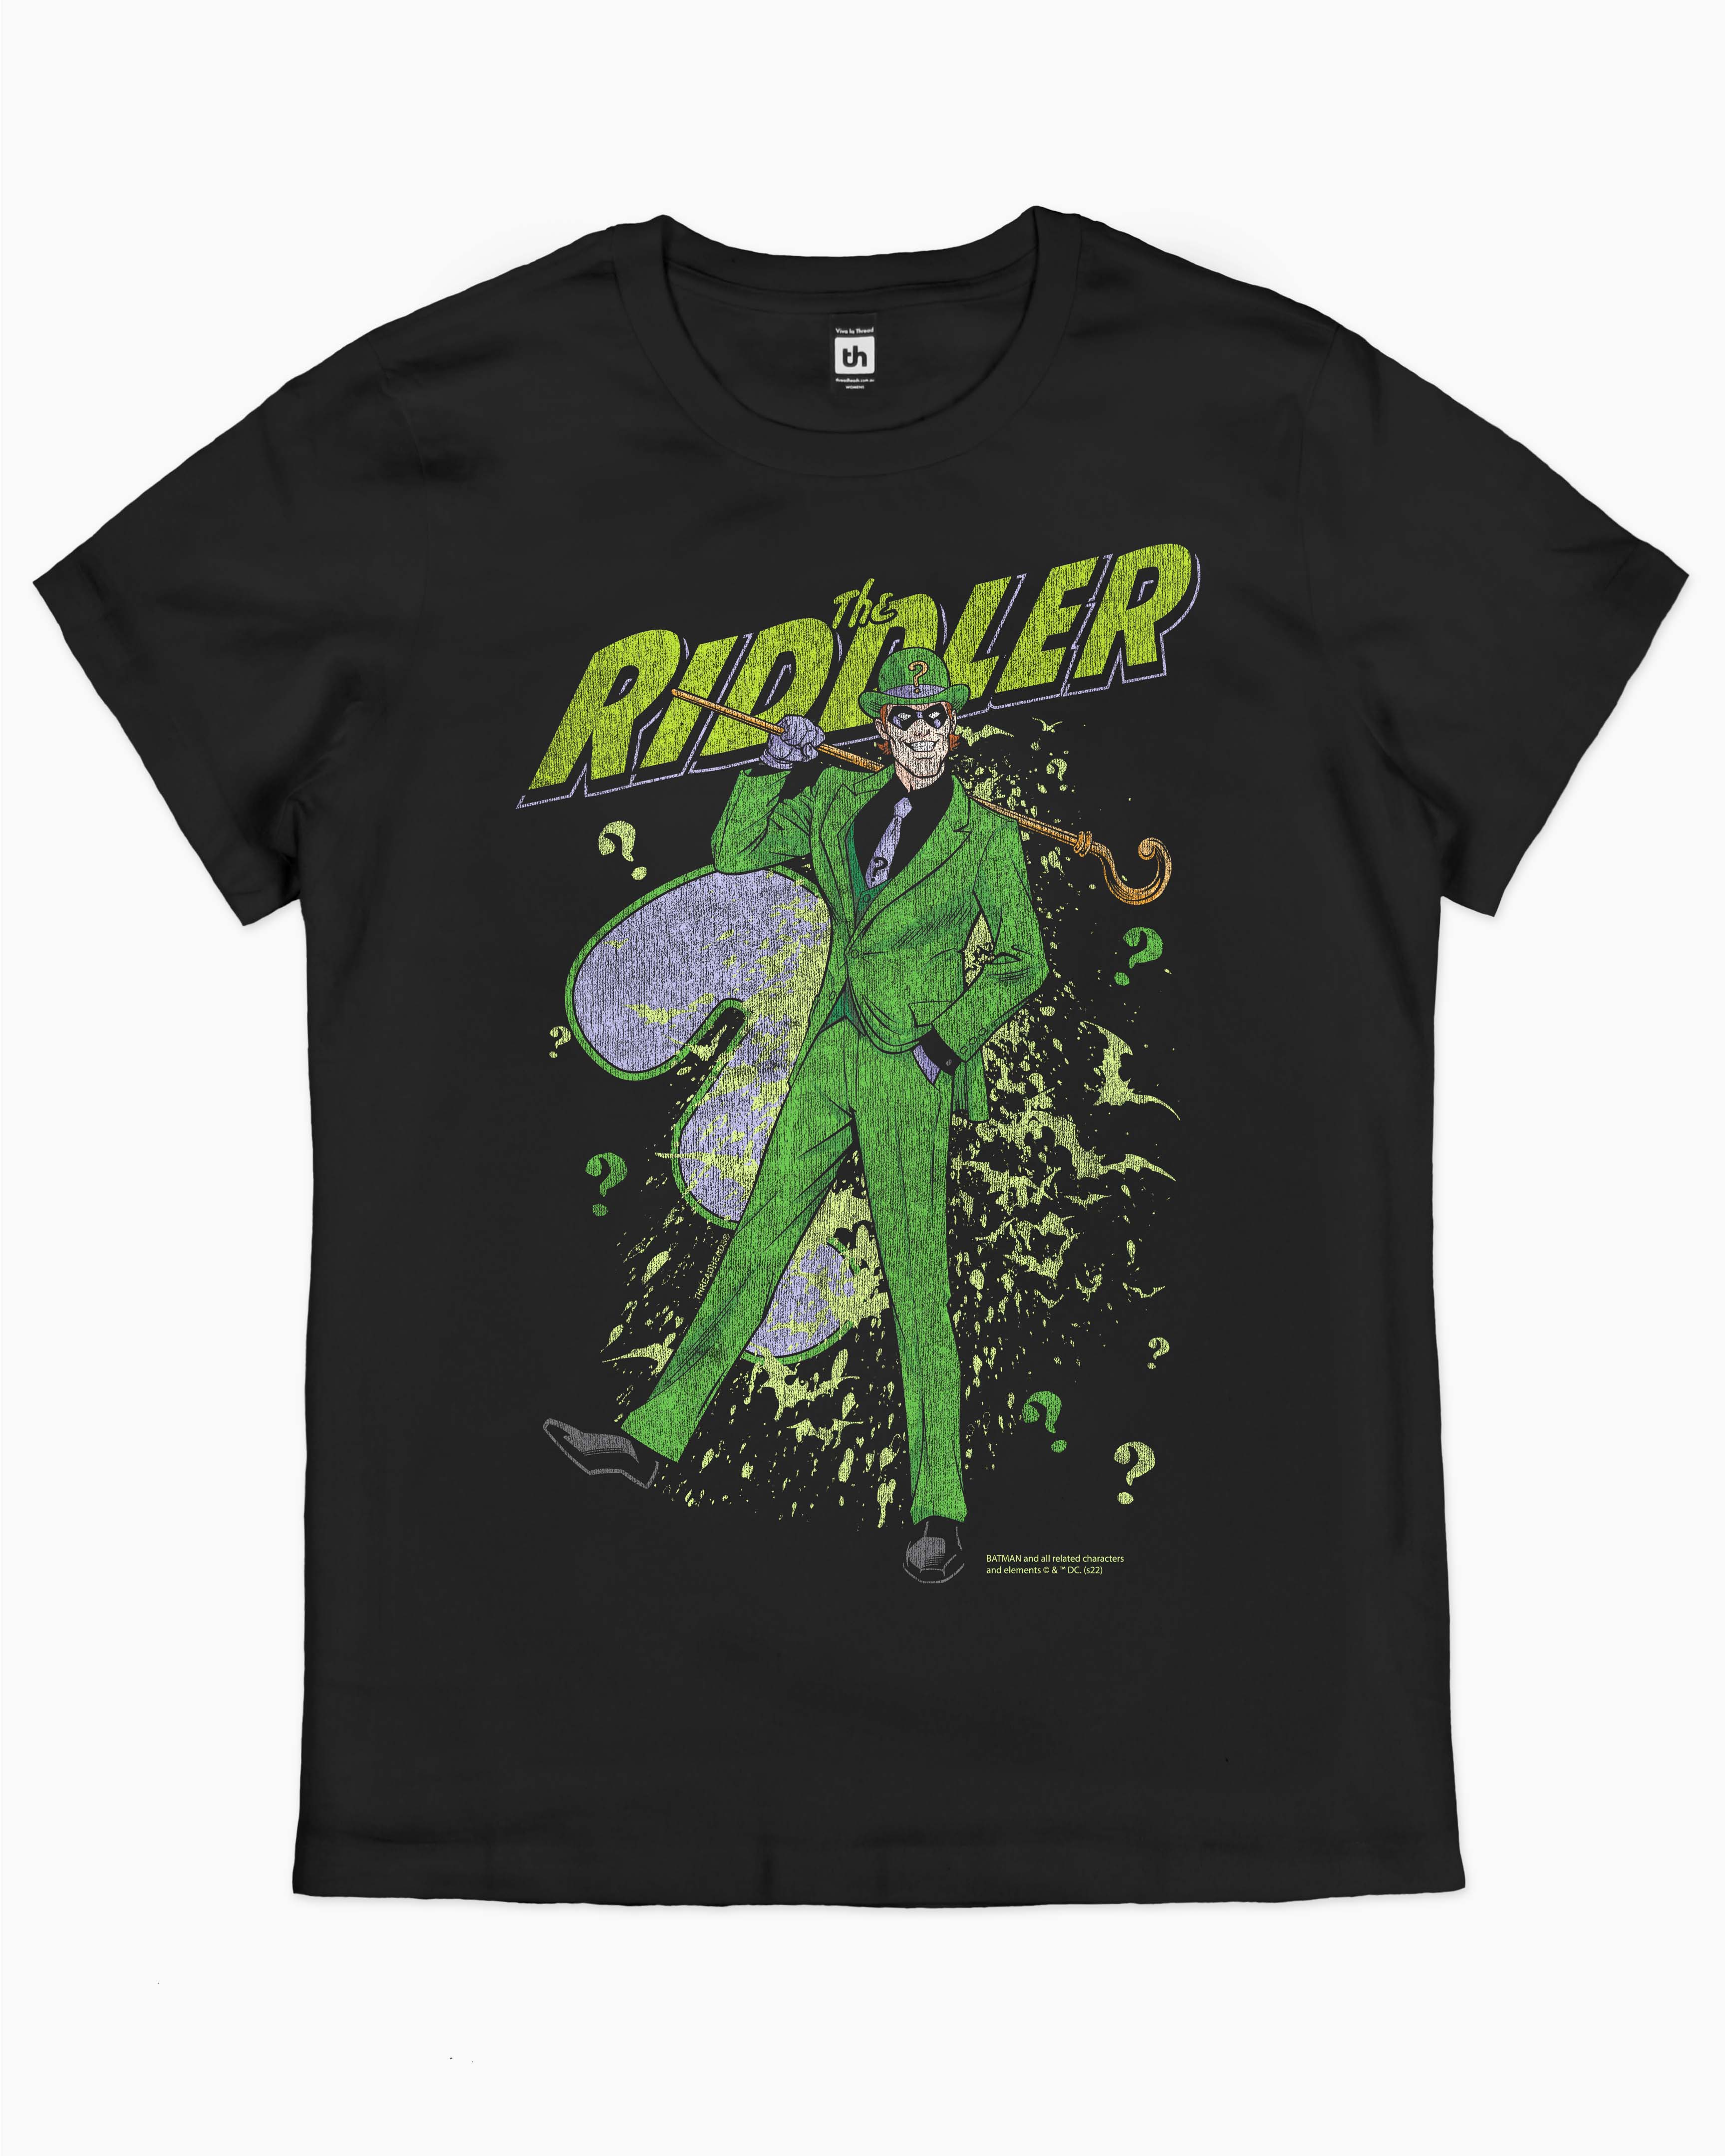 The Riddler T-Shirt